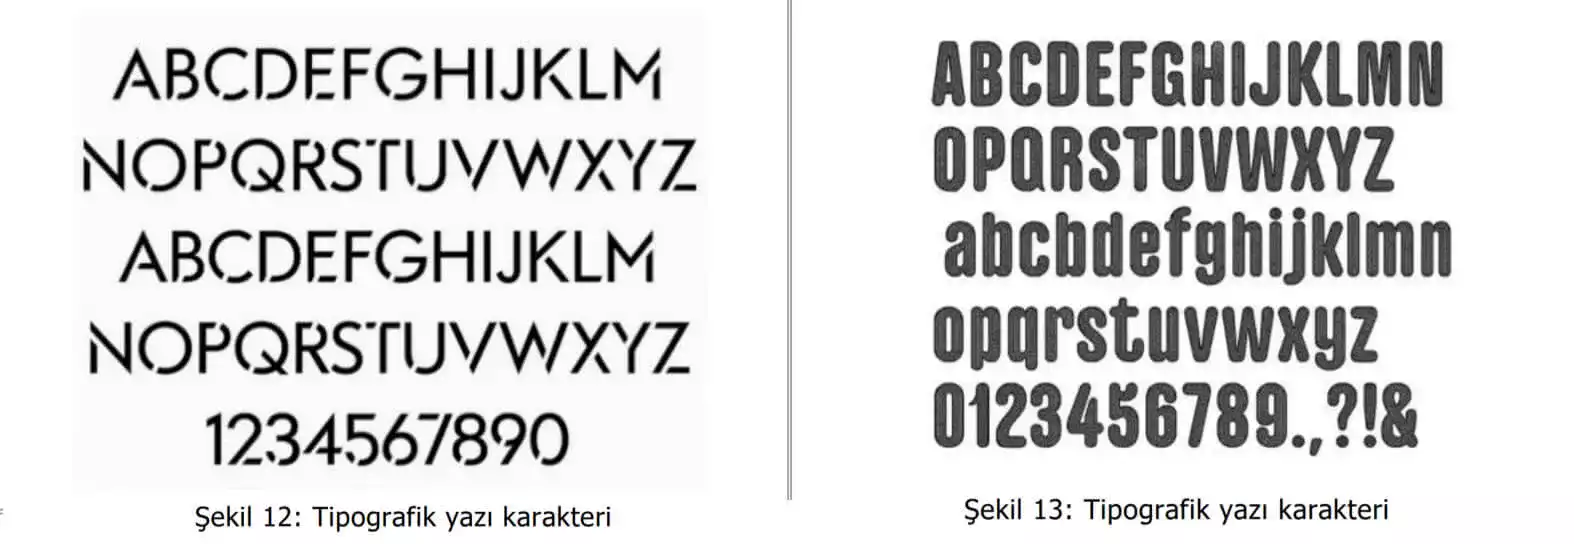 tipografik yazı karakter örnekleri-Trabzon Patent